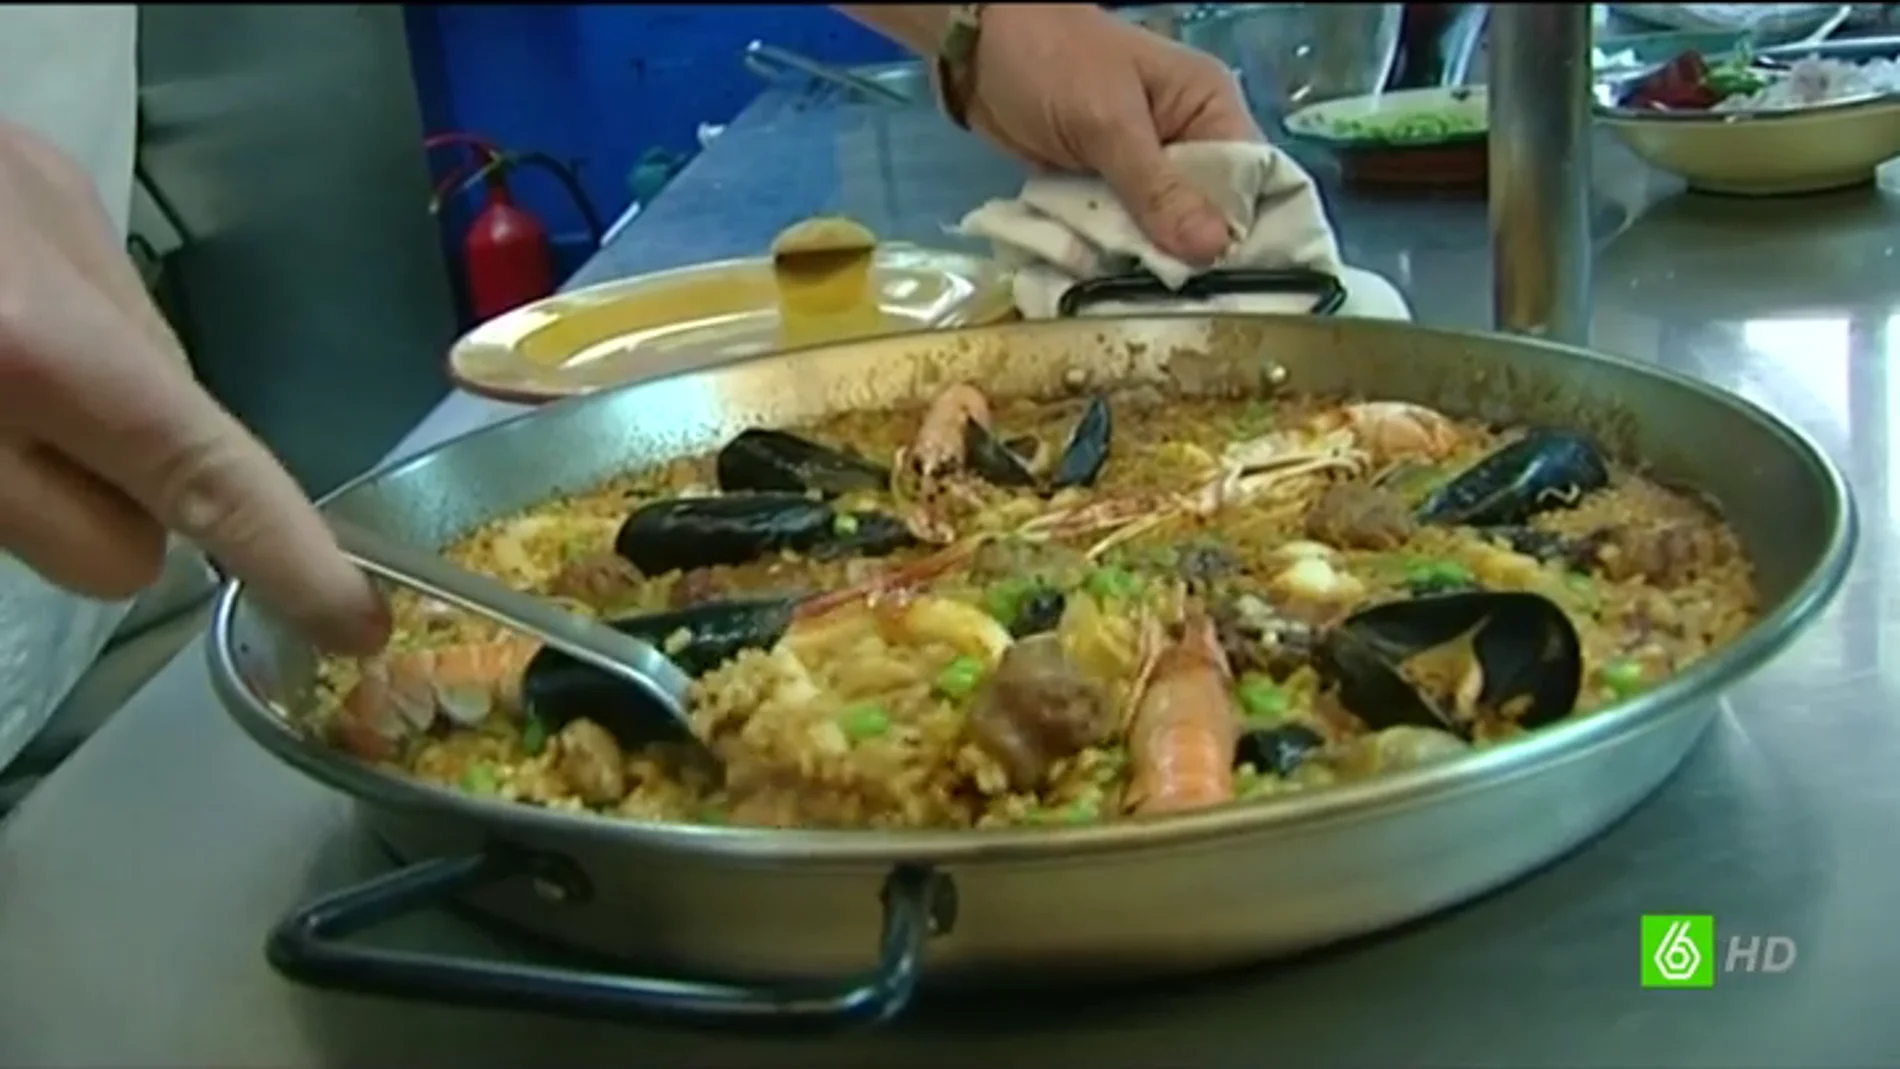 Un cocinero catalán quiere registrar su paella como 'paella catalana'